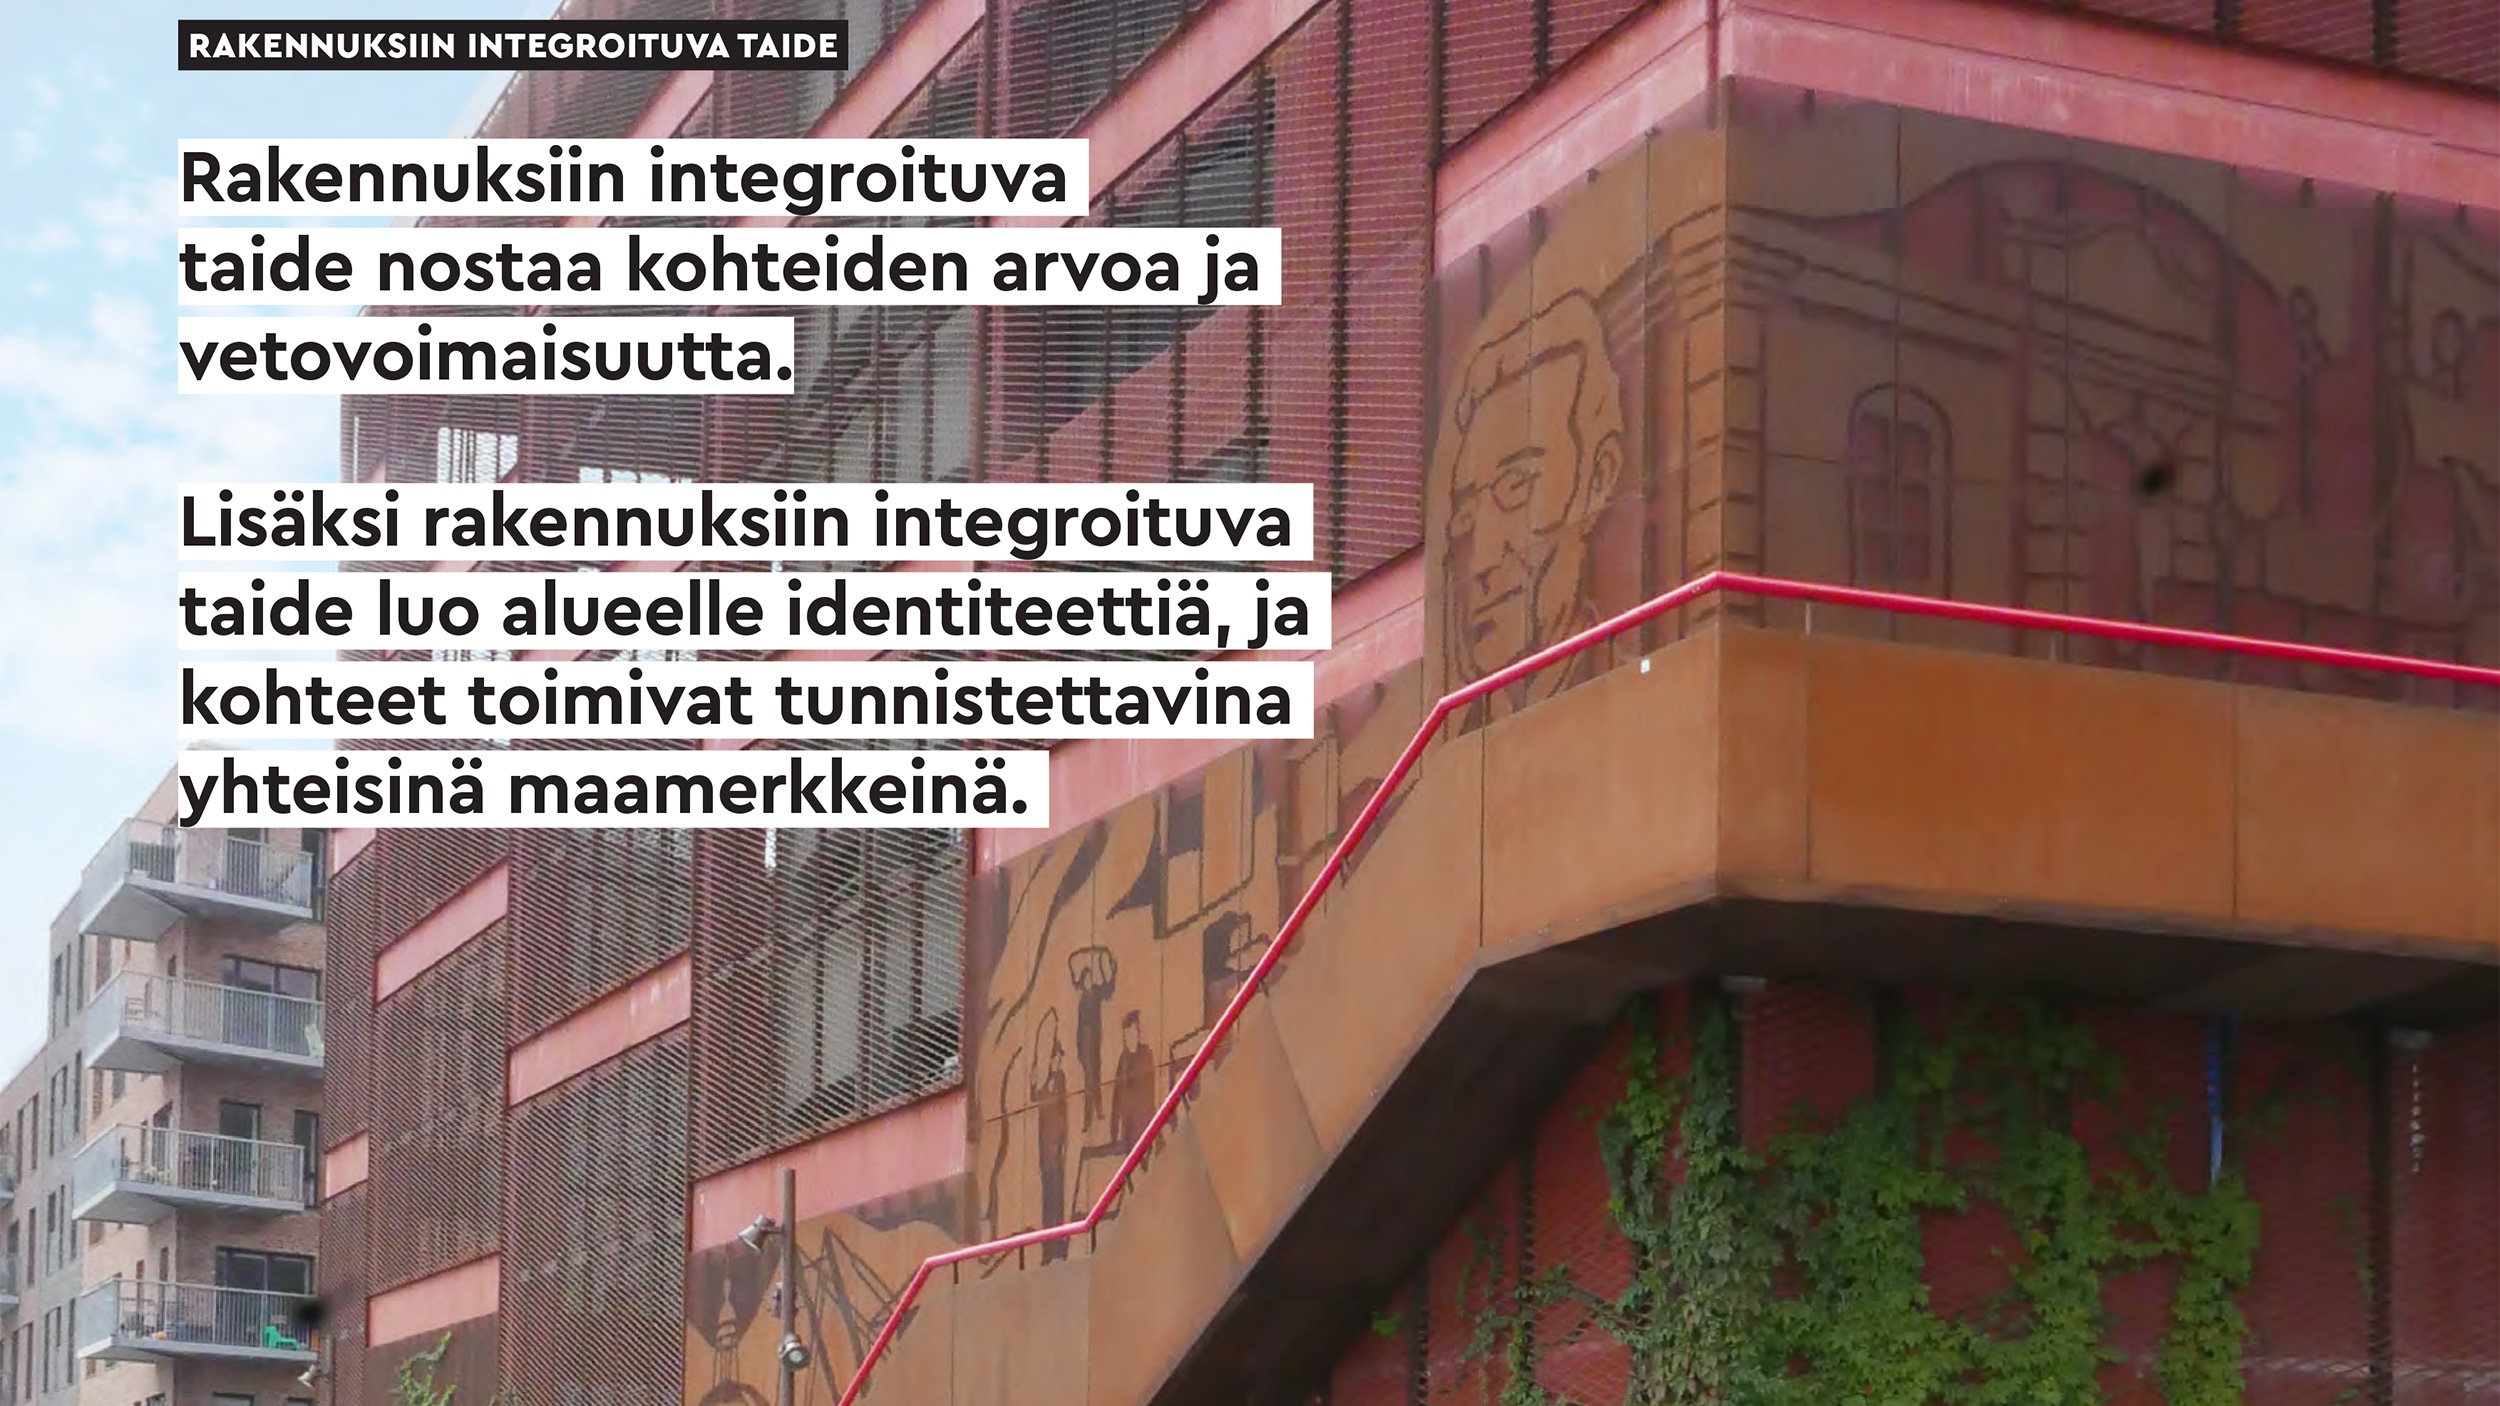 Rakennuksin integroituva taide kuului Lahden Ranta-Kartanon taideohjelmaan